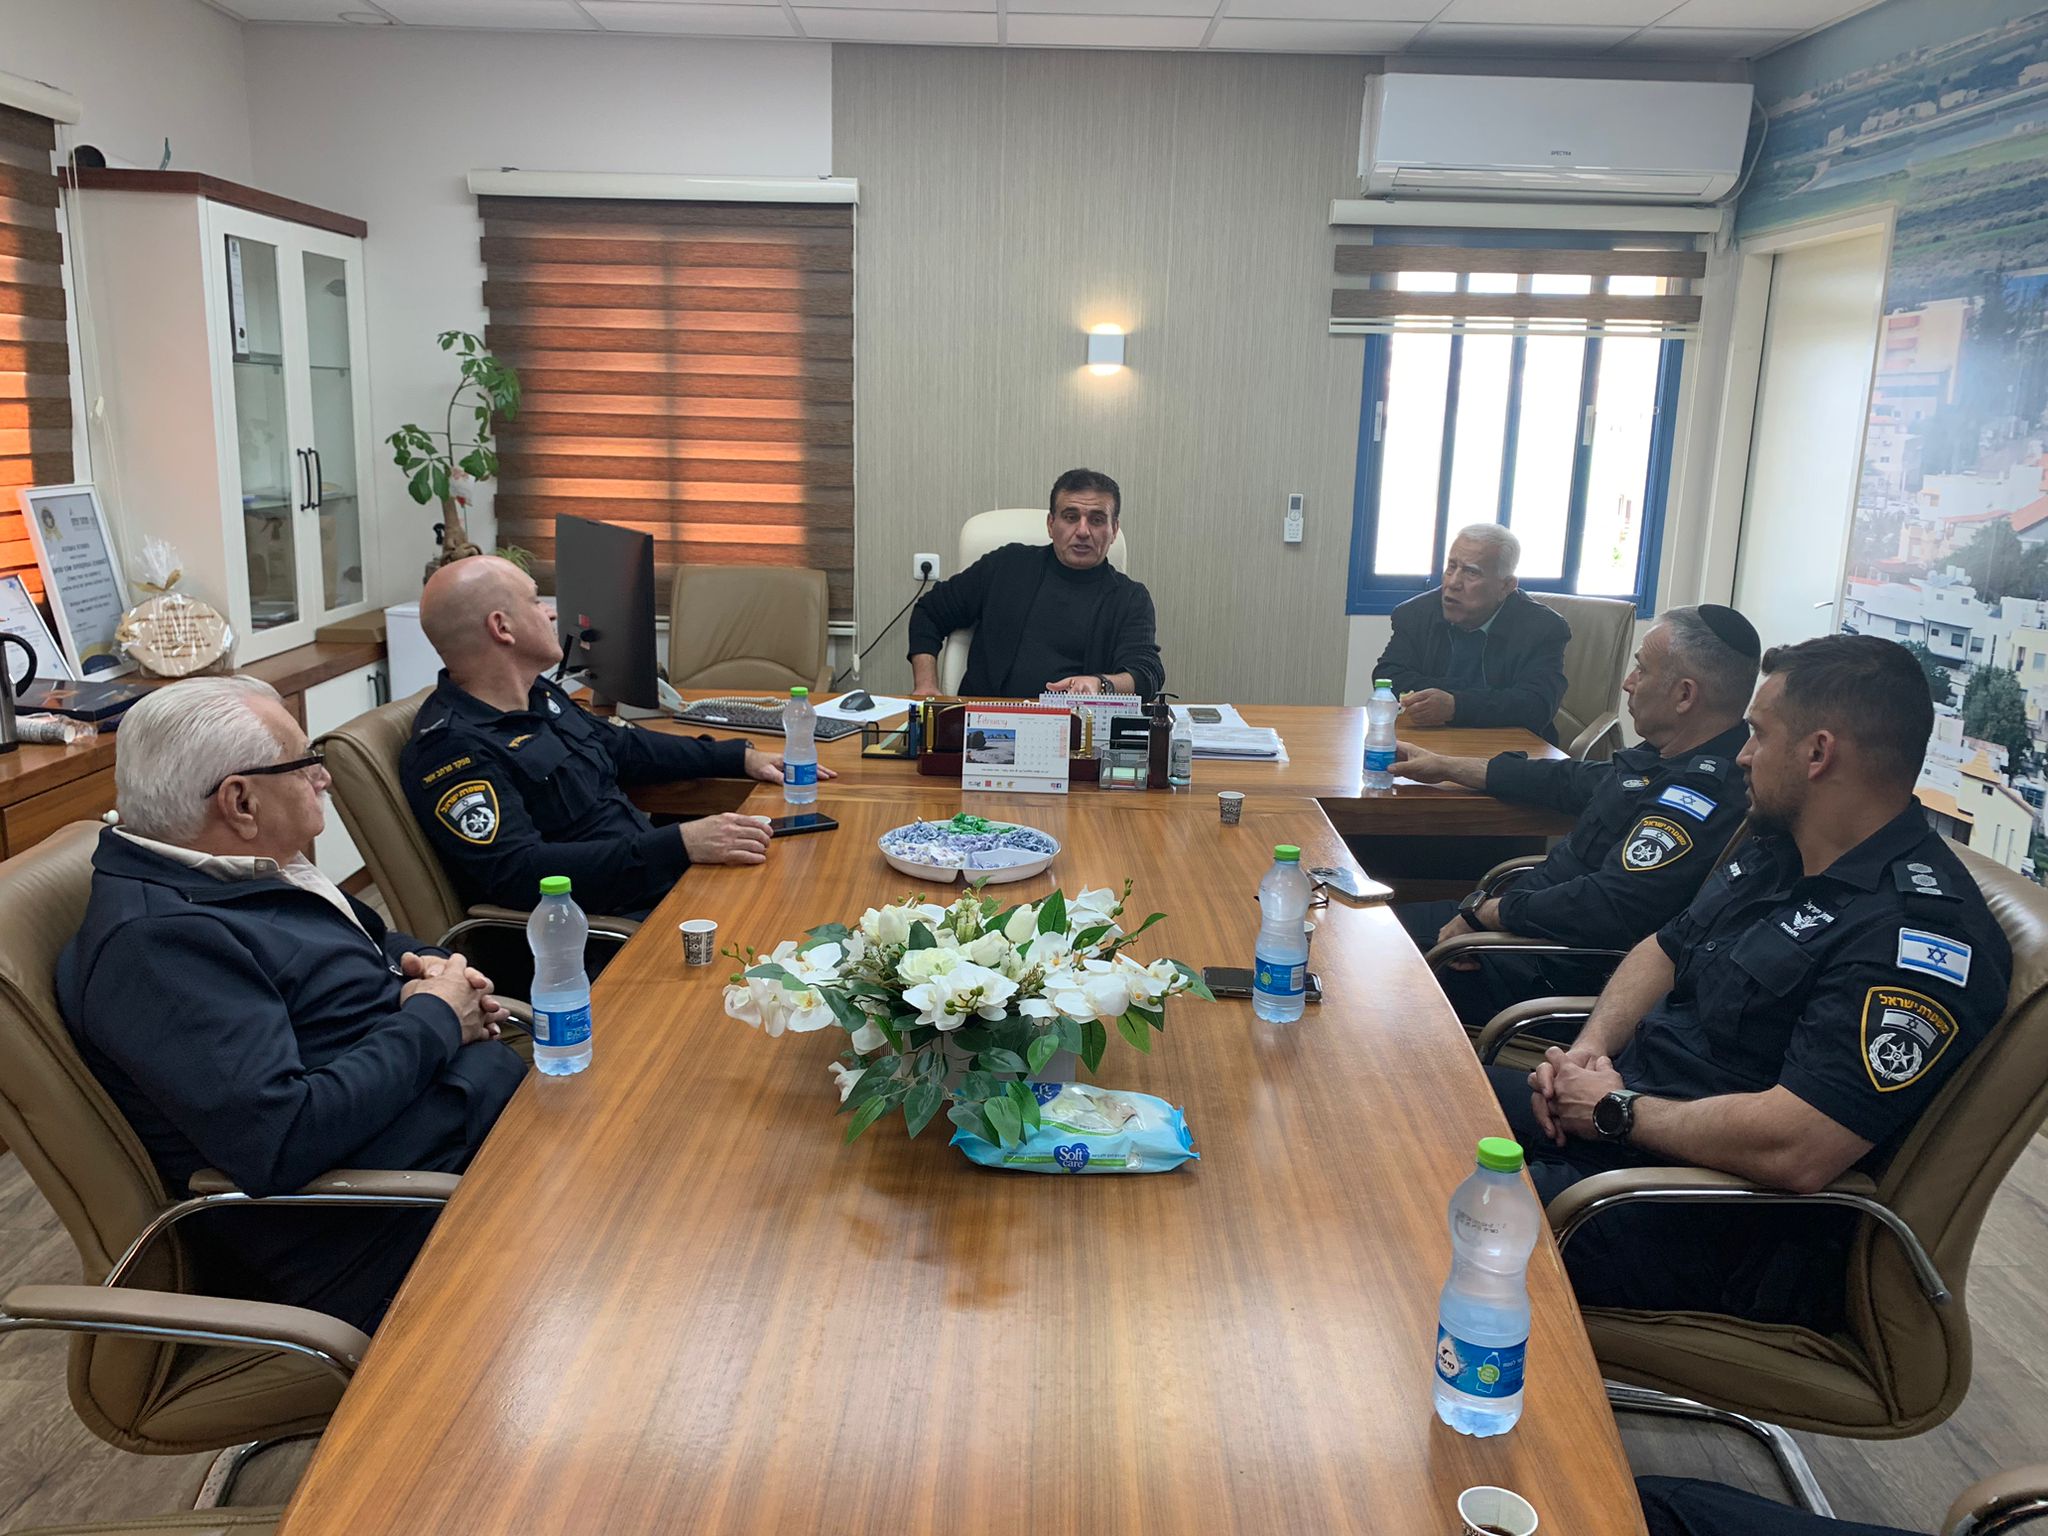 لقاء هام وبنّاء بين مندوبي الشرطة ورئيس مجلس أبوسنان المحلي السيد سيف مشلب على ضوء الأحداث في نصف السنة الأخير